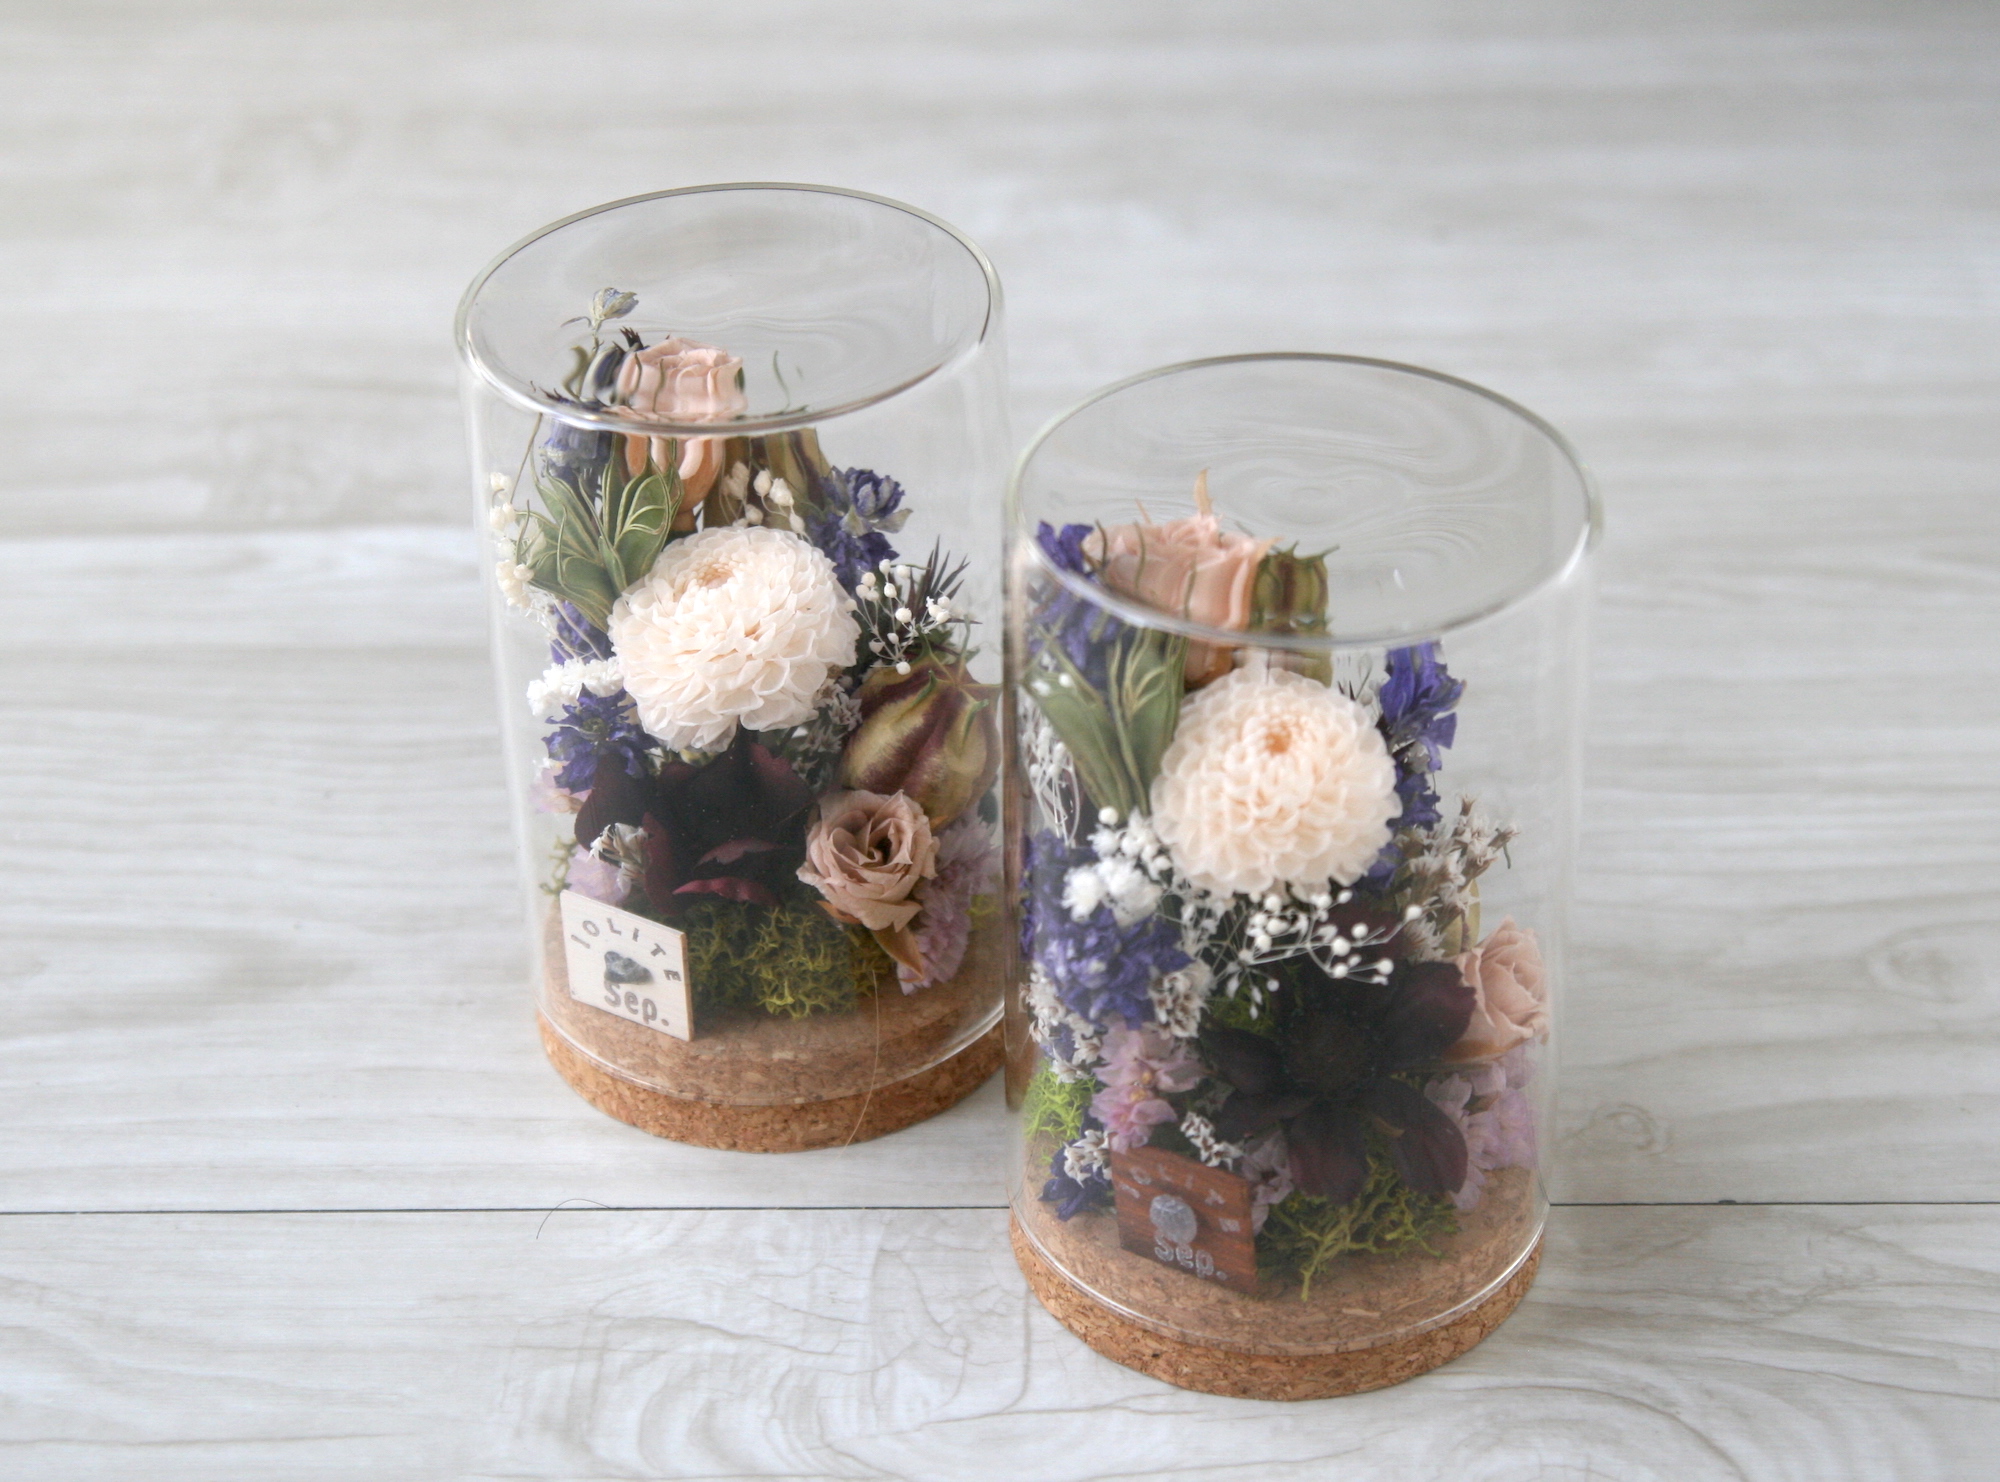 9月生まれの方へ 誕生月の天然石 9月の花 Flower Garden Iichi ハンドメイド クラフト作品 手仕事品の通販